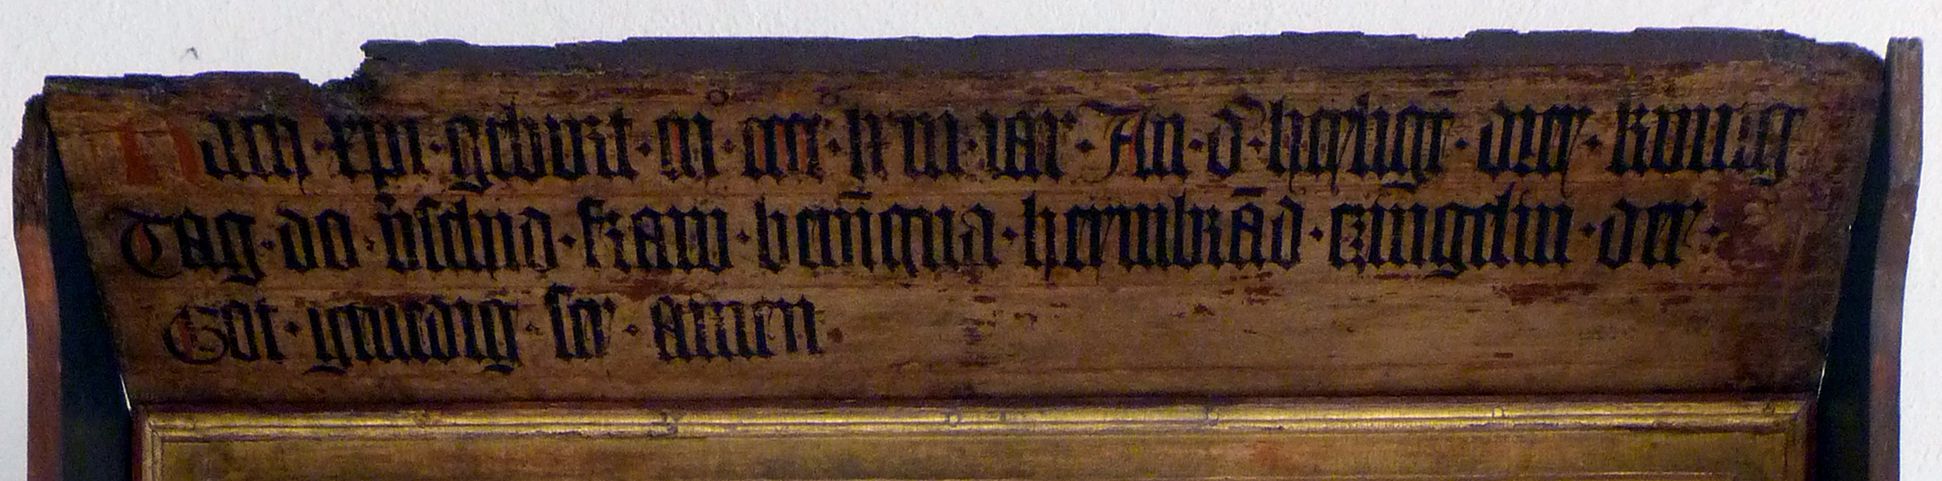 Epitaph der Benigna Holzschuher Vordach mit Inschrift